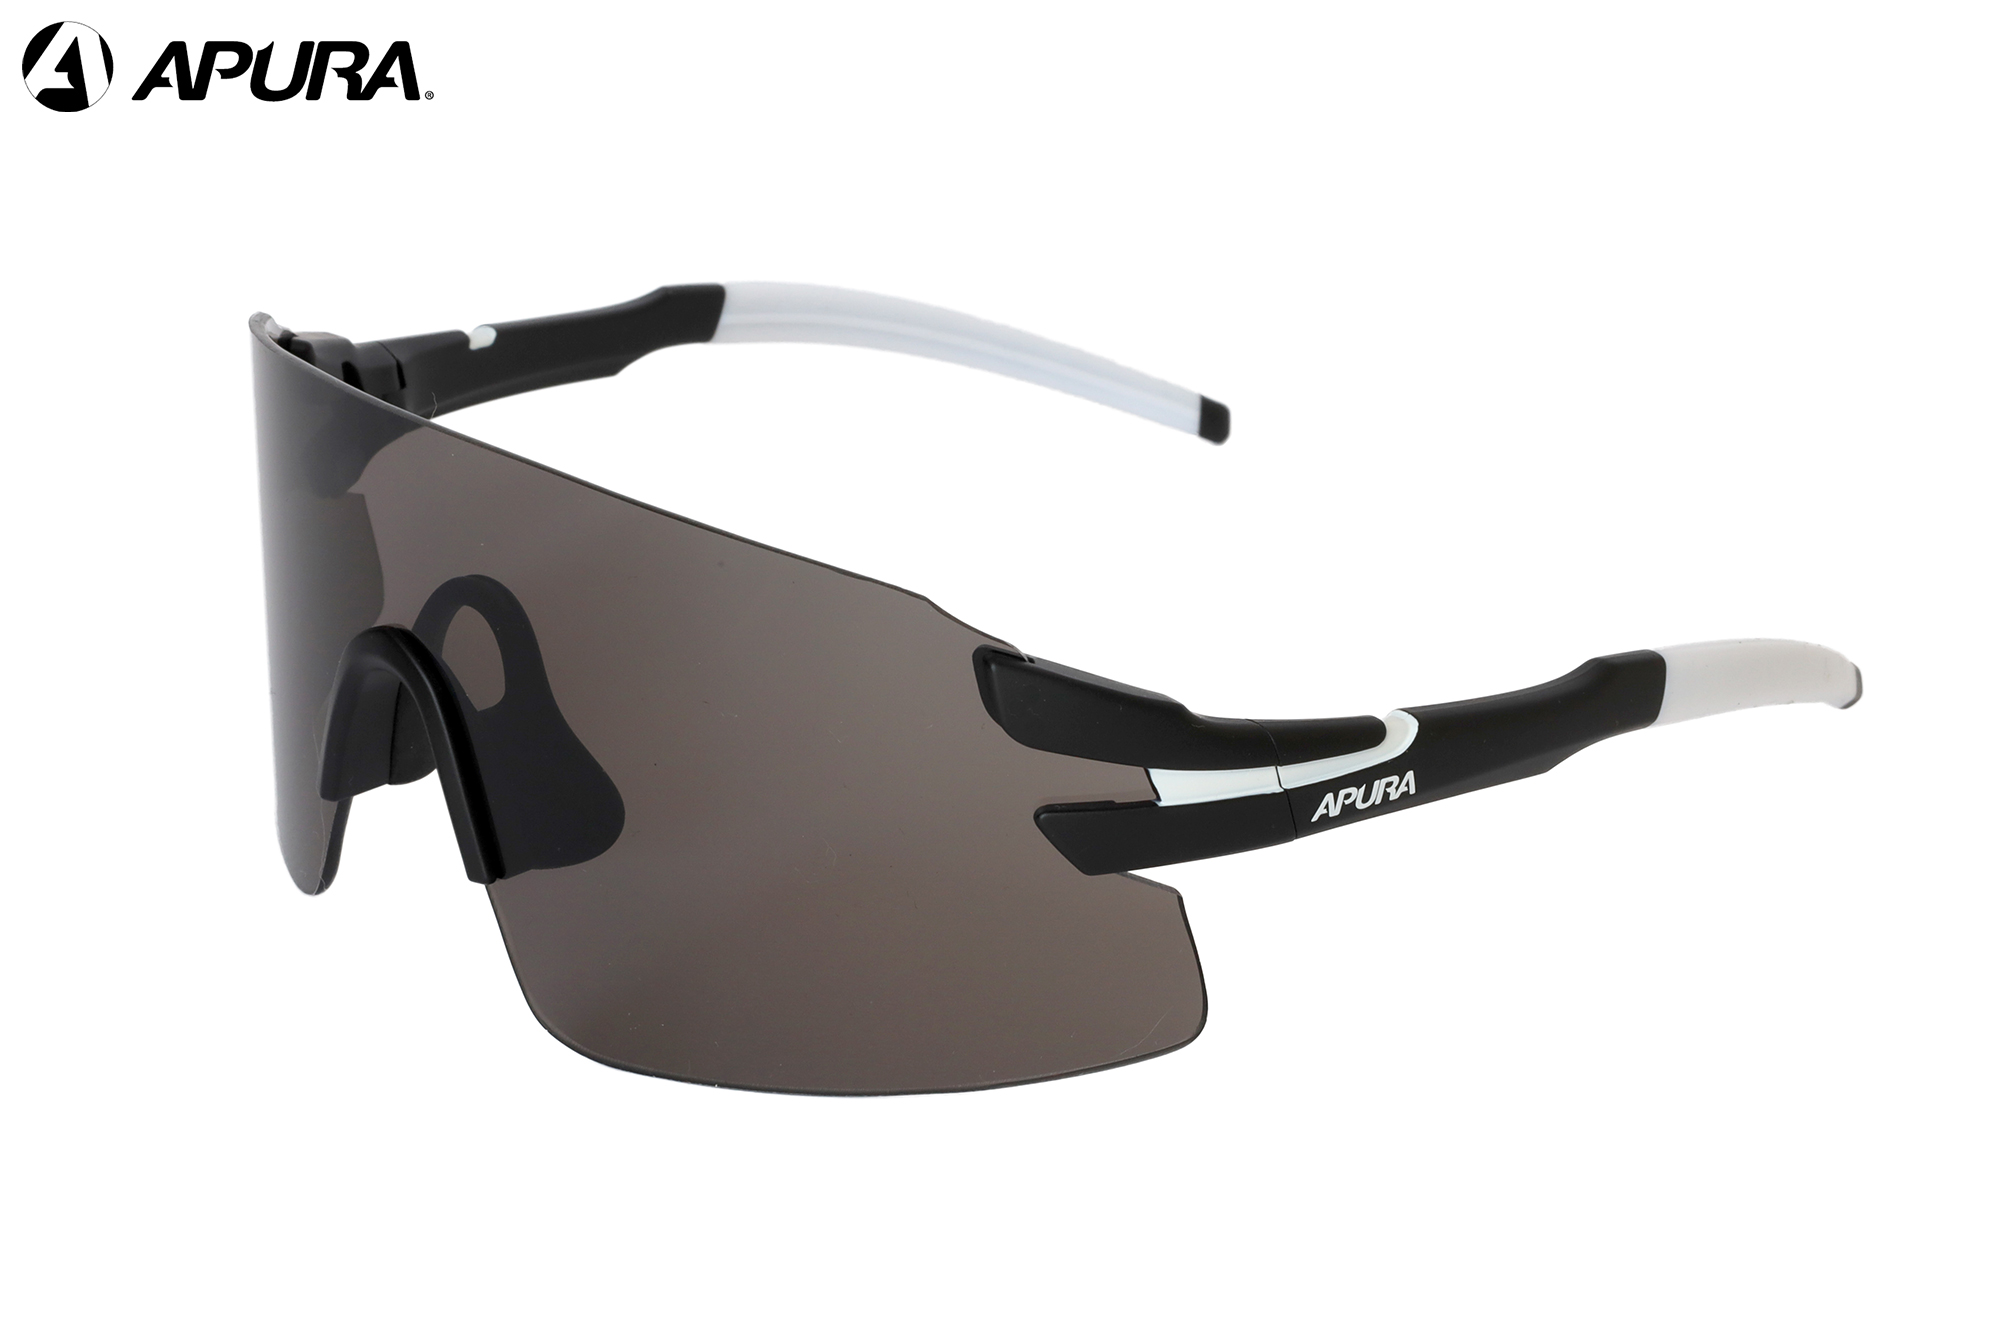 APURA Trilhas C1 - schwarz / weiß - Sonnenbrille Erwachsene